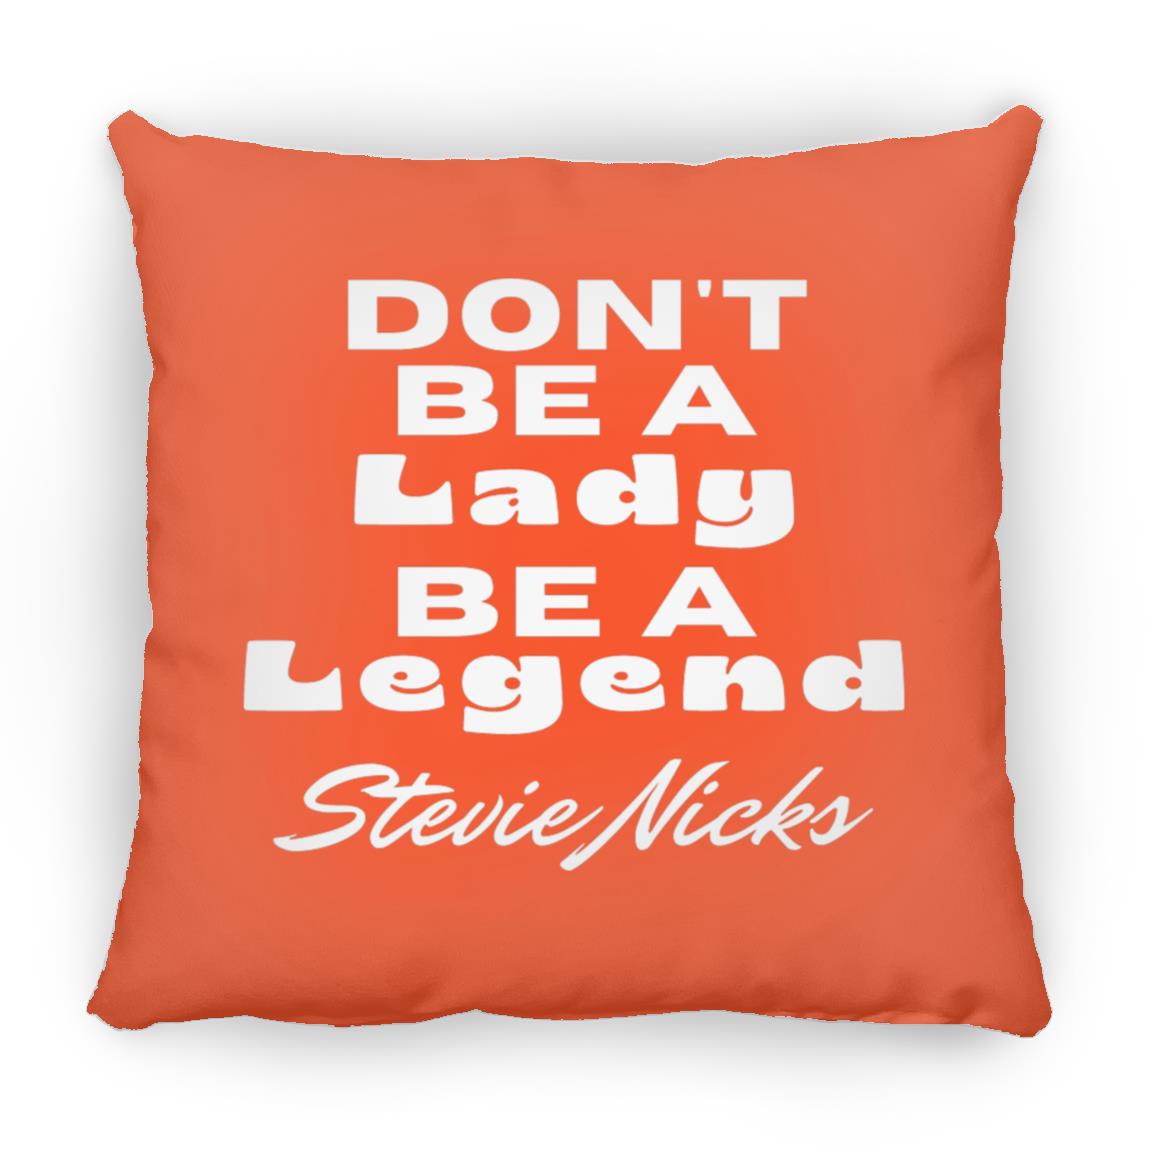 Stevie Nicks Be A Legend Throw Pillow